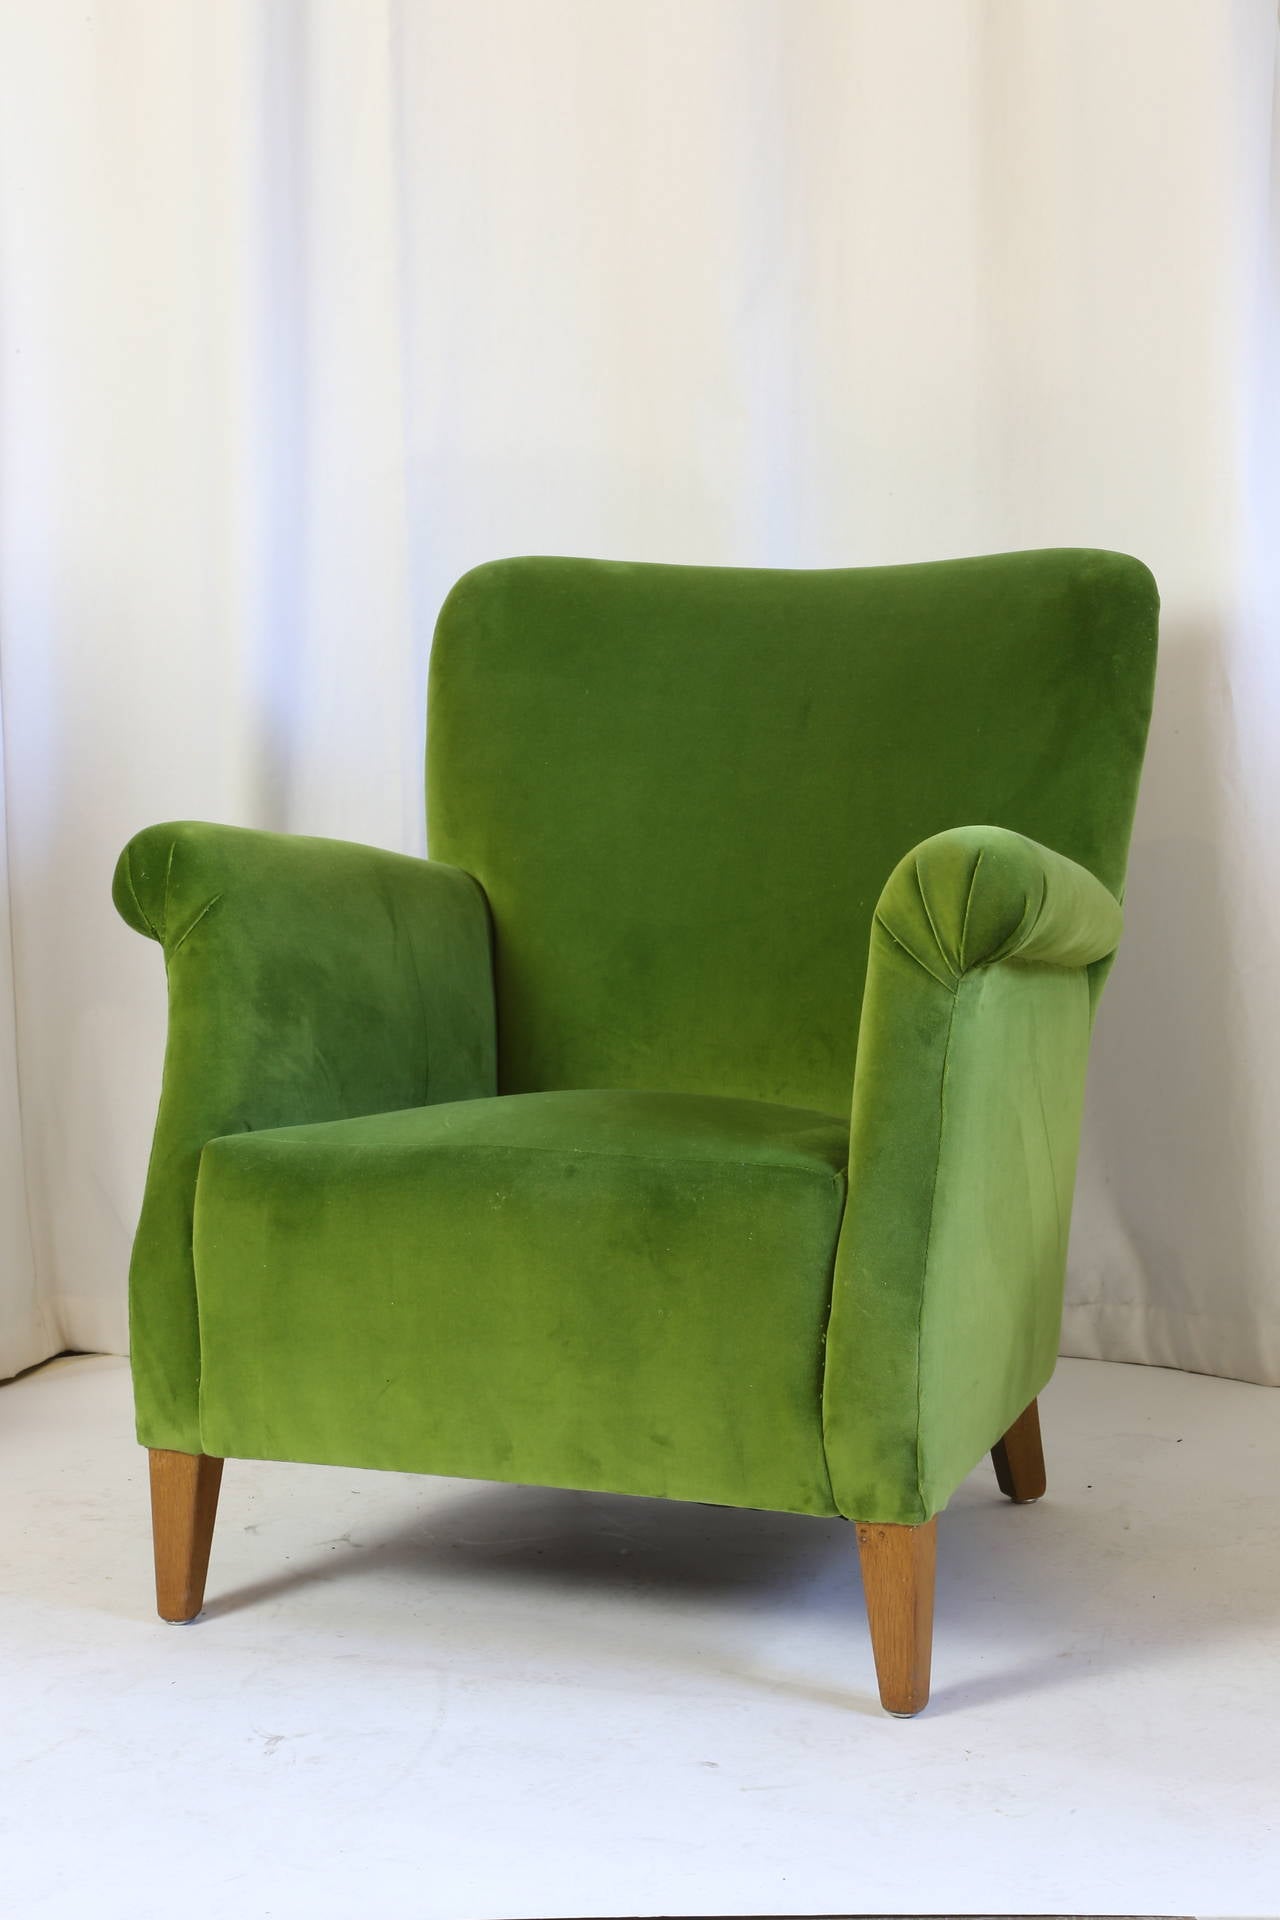 Danish boudoir armchairs newly upholstered in apple green velvet rising on squared angled legs.